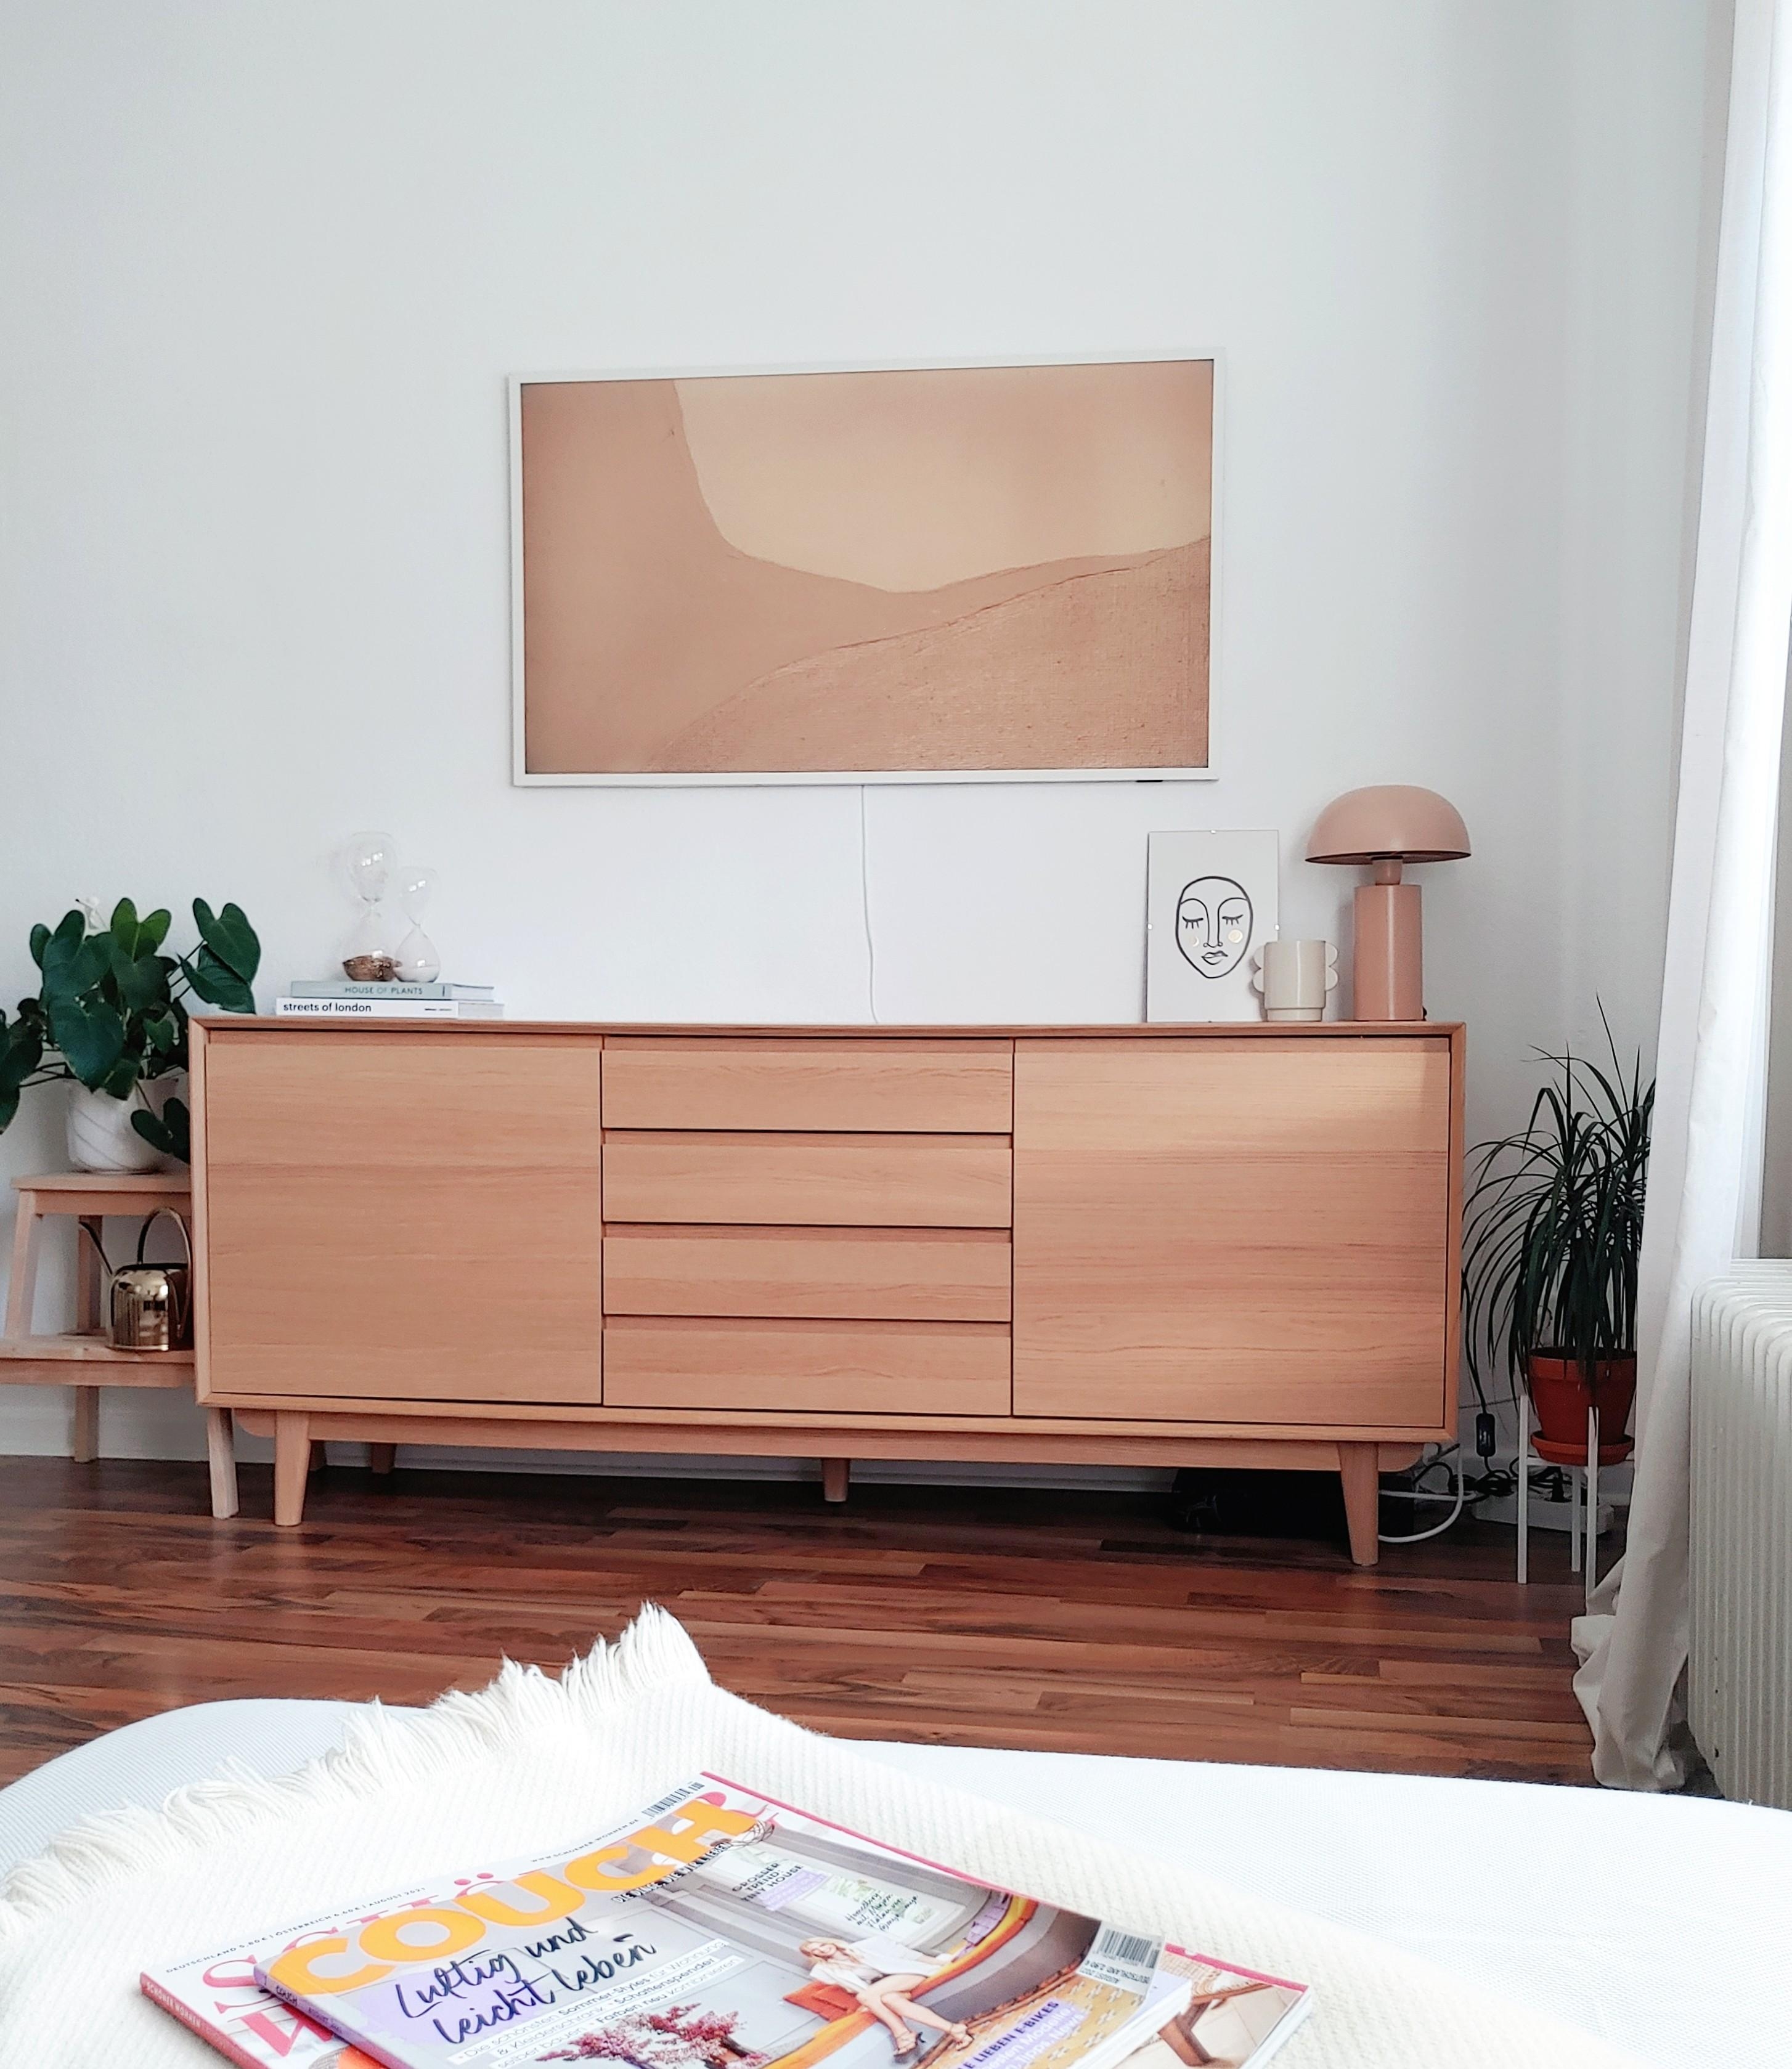 Neuer Rahmen, neues Bild.

#tvmöbel #wohnzimmer #scandi #hygge #sideboard #solebich #couchstyle #couchliebt

